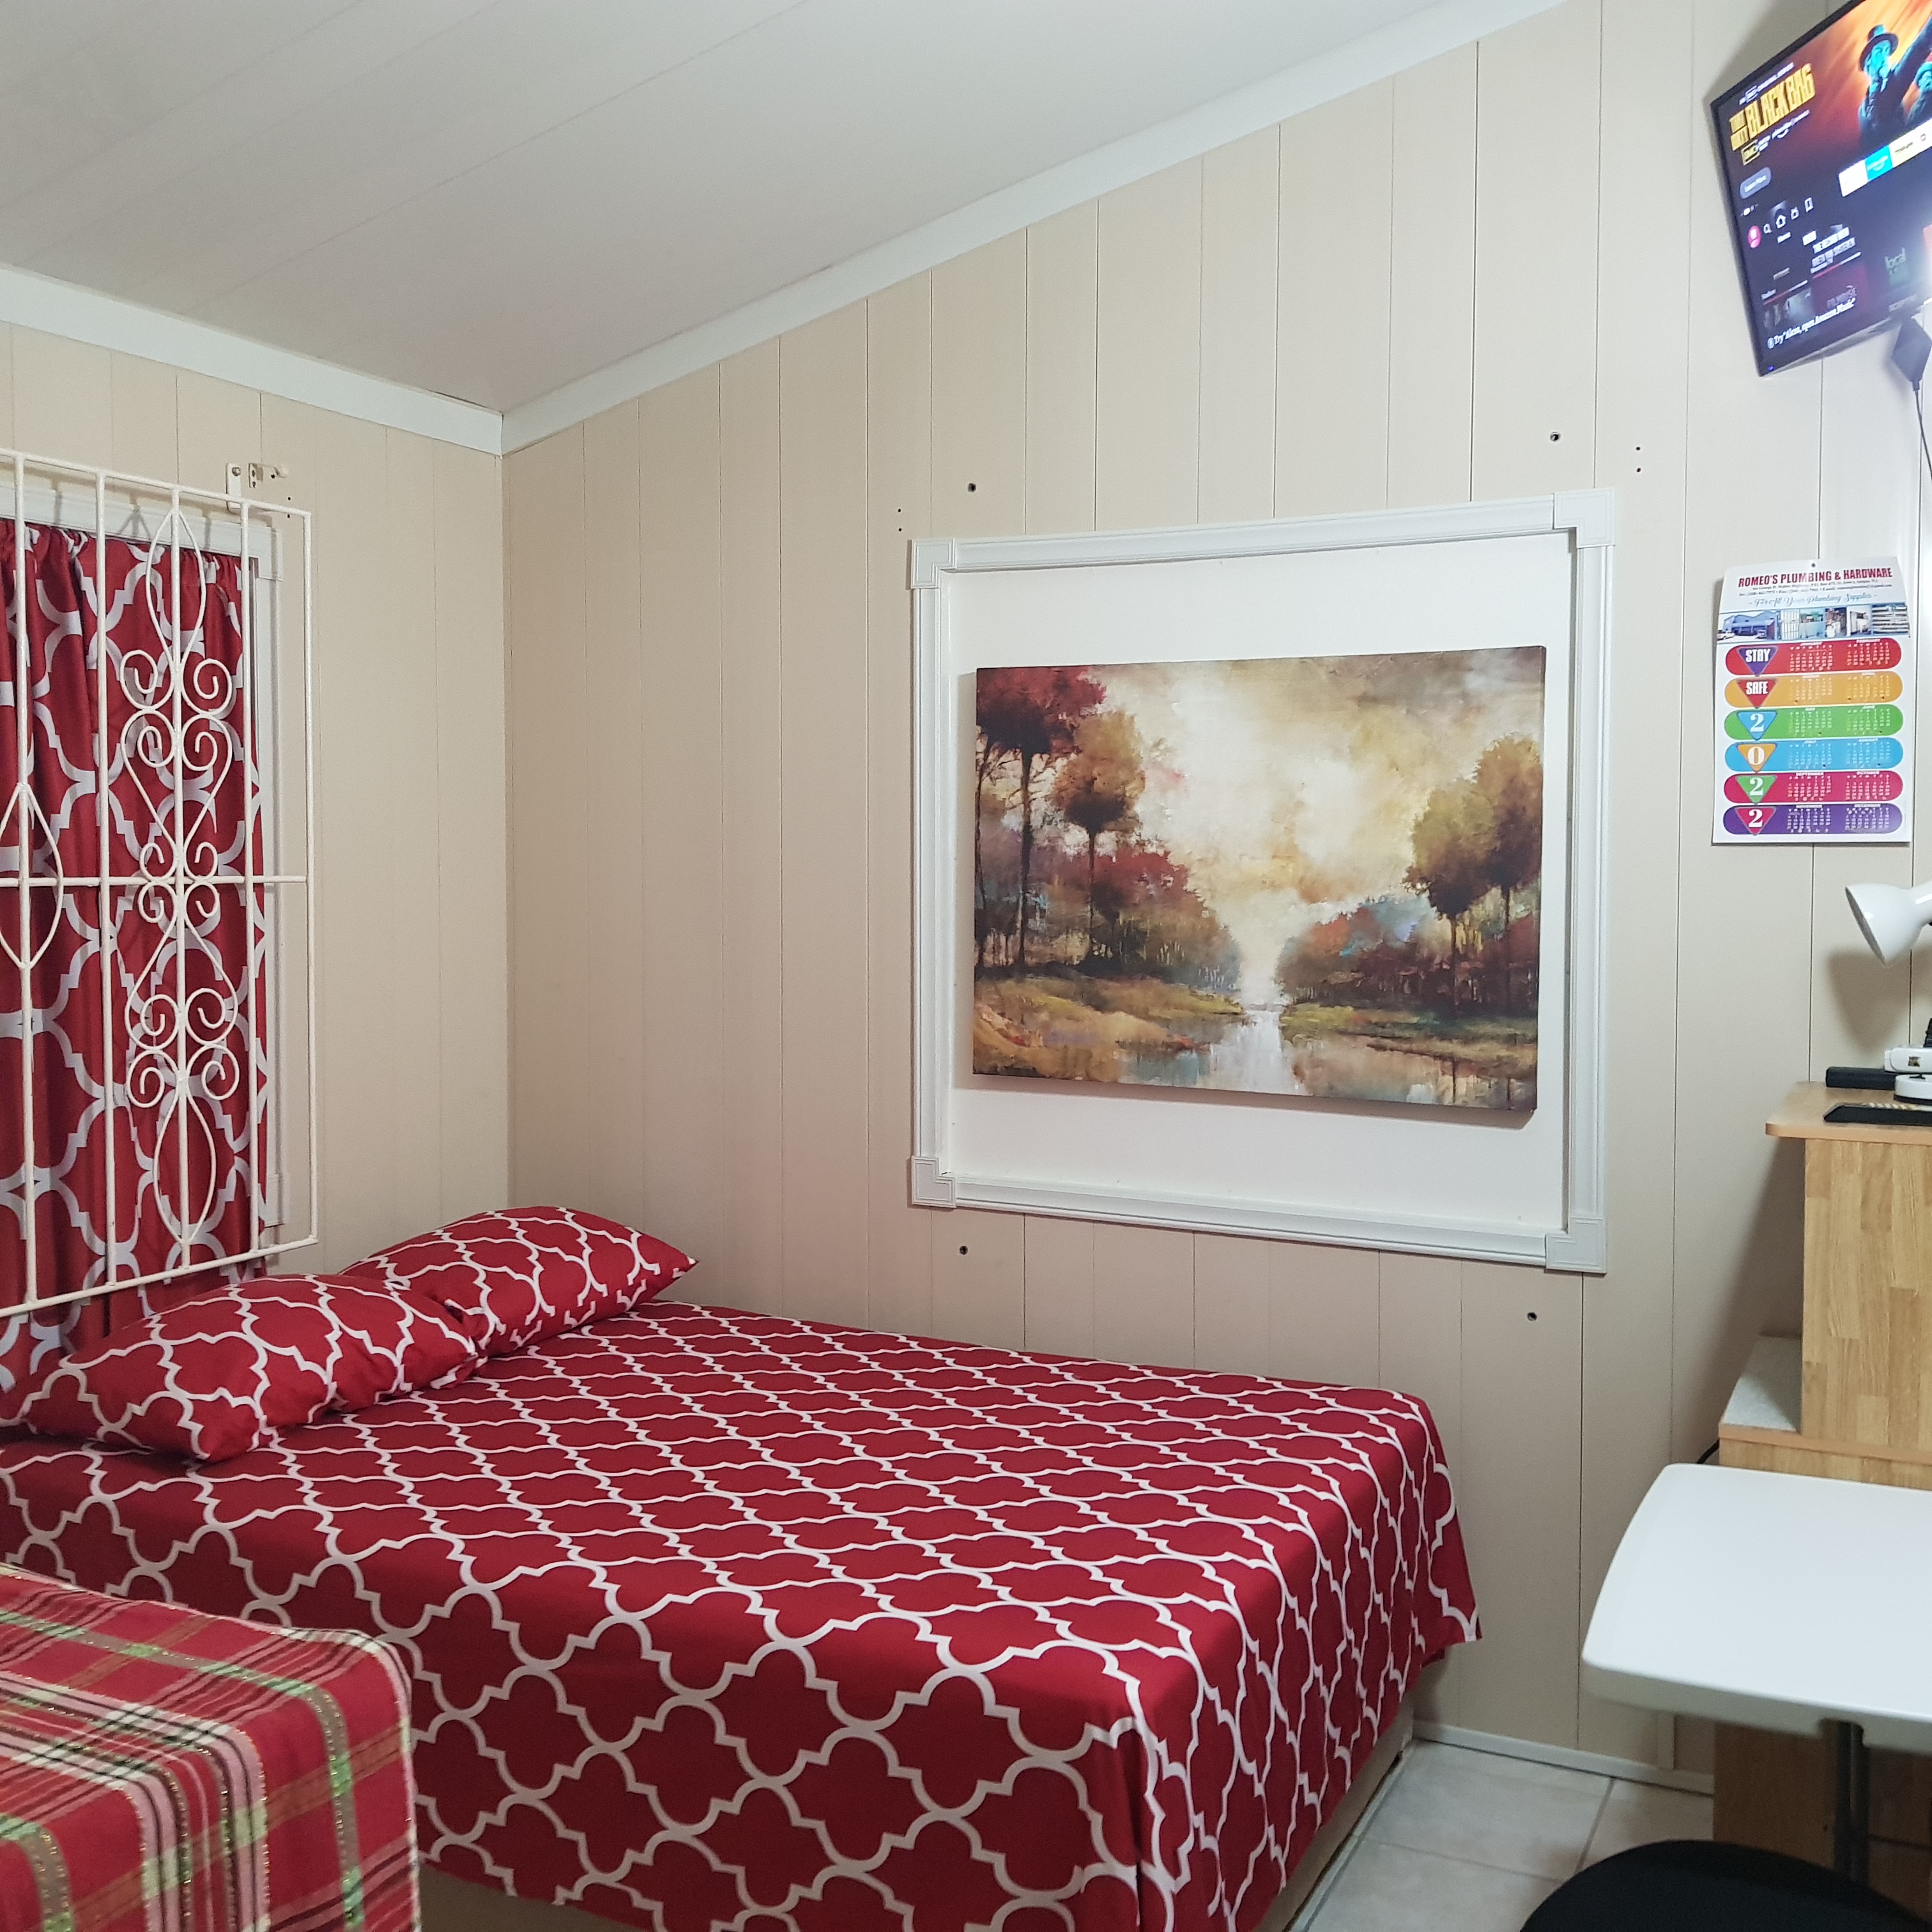 2 bedroom queen suite rentals osbourn